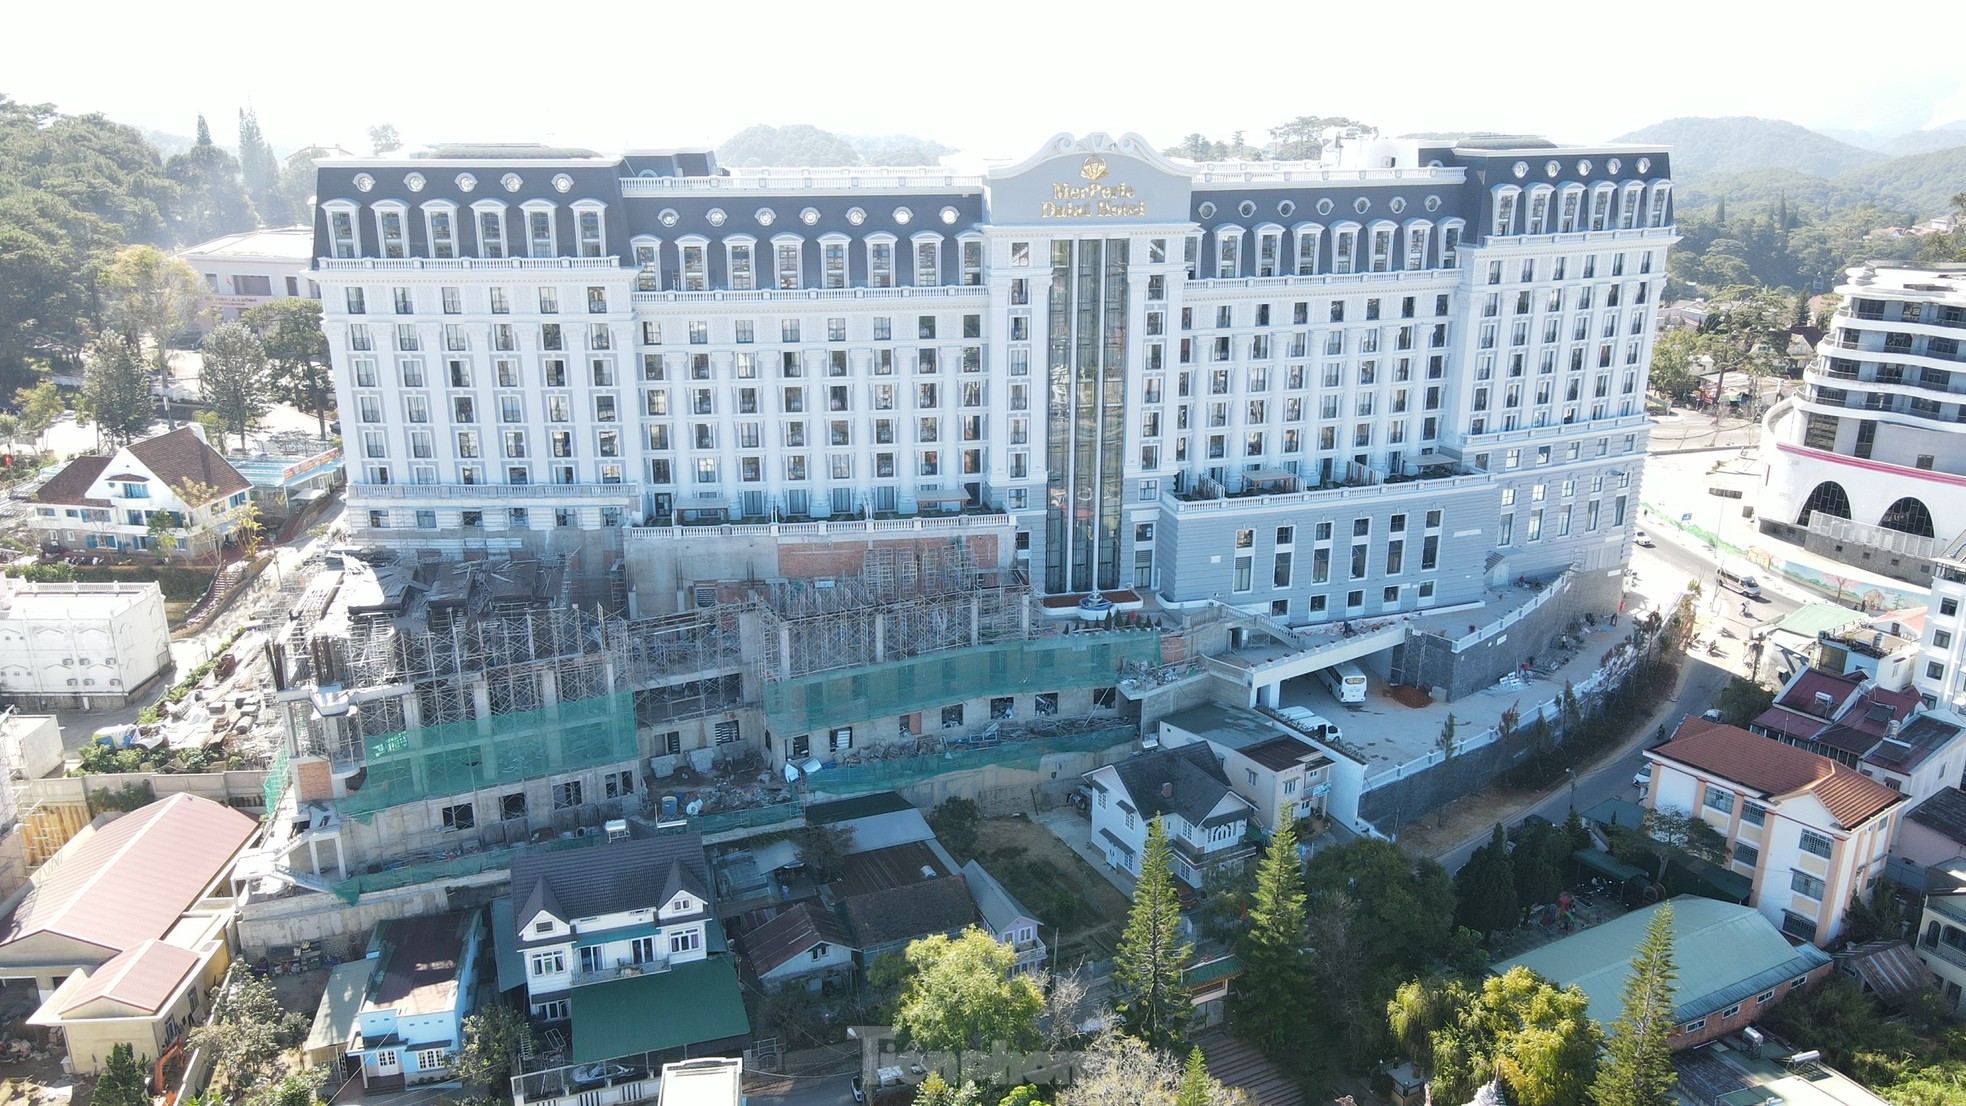 Cận cảnh khách sạn 5 sao lớn nhất Đà Lạt xây vượt phép 4.450m2 - Ảnh 3.